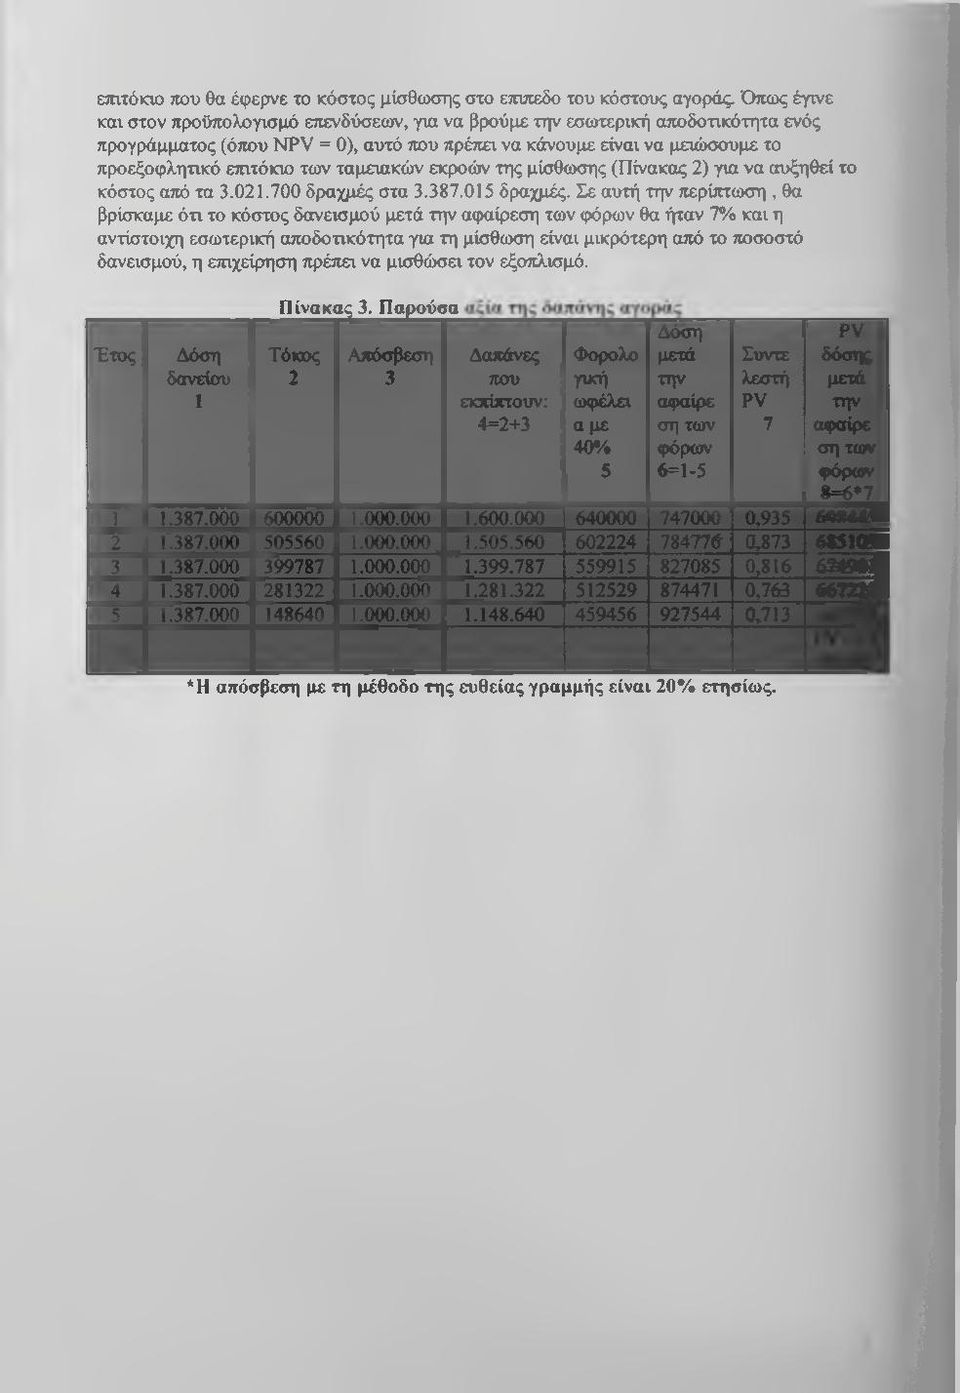 ταμειακών εκροών της μίσθωσης (Πίνακας 2) για να αυξηθεί το κόστος από τα 3.Θ21.700 δραχμές στα 3.387.015 δραχμές.